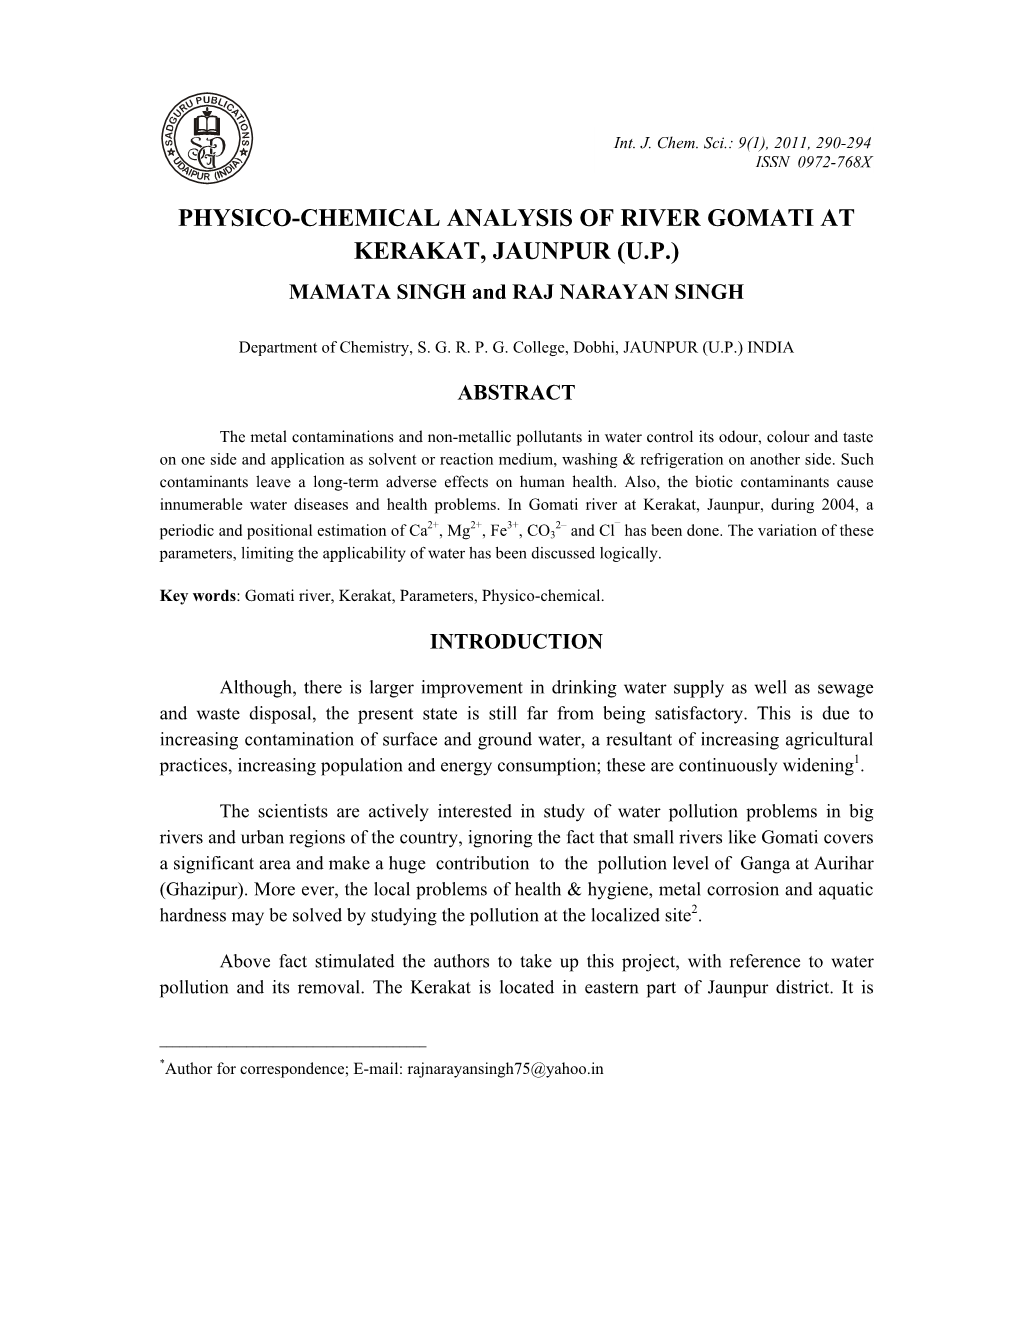 PHYSICO-CHEMICAL ANALYSIS of RIVER GOMATI at KERAKAT, JAUNPUR (U.P.) MAMATA SINGH and RAJ NARAYAN SINGH